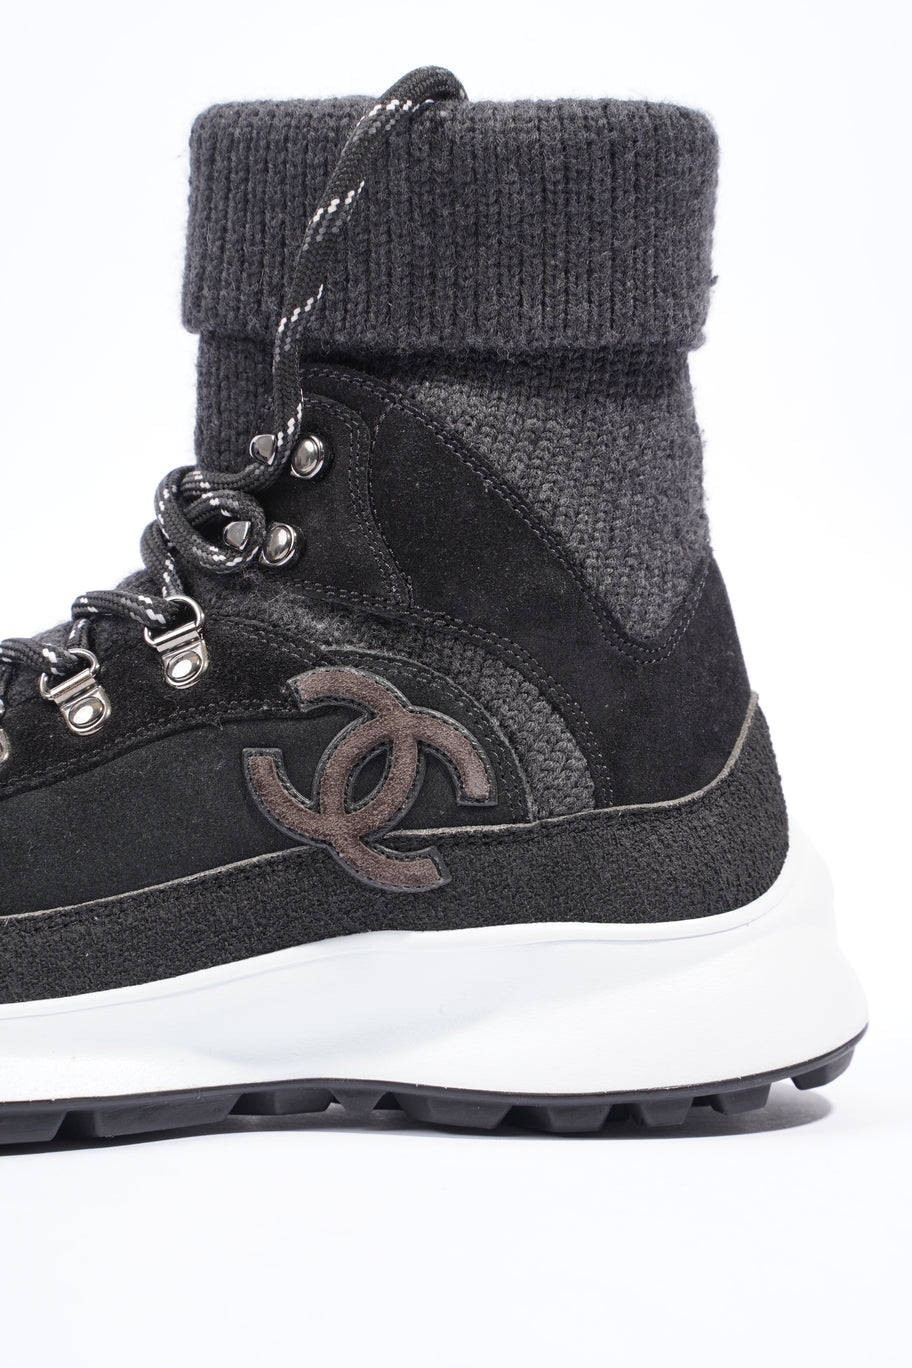 Interlocking CC Logo High Top Sneaker Black / Dark Grey Knit EU 38 UK 5 Image 9